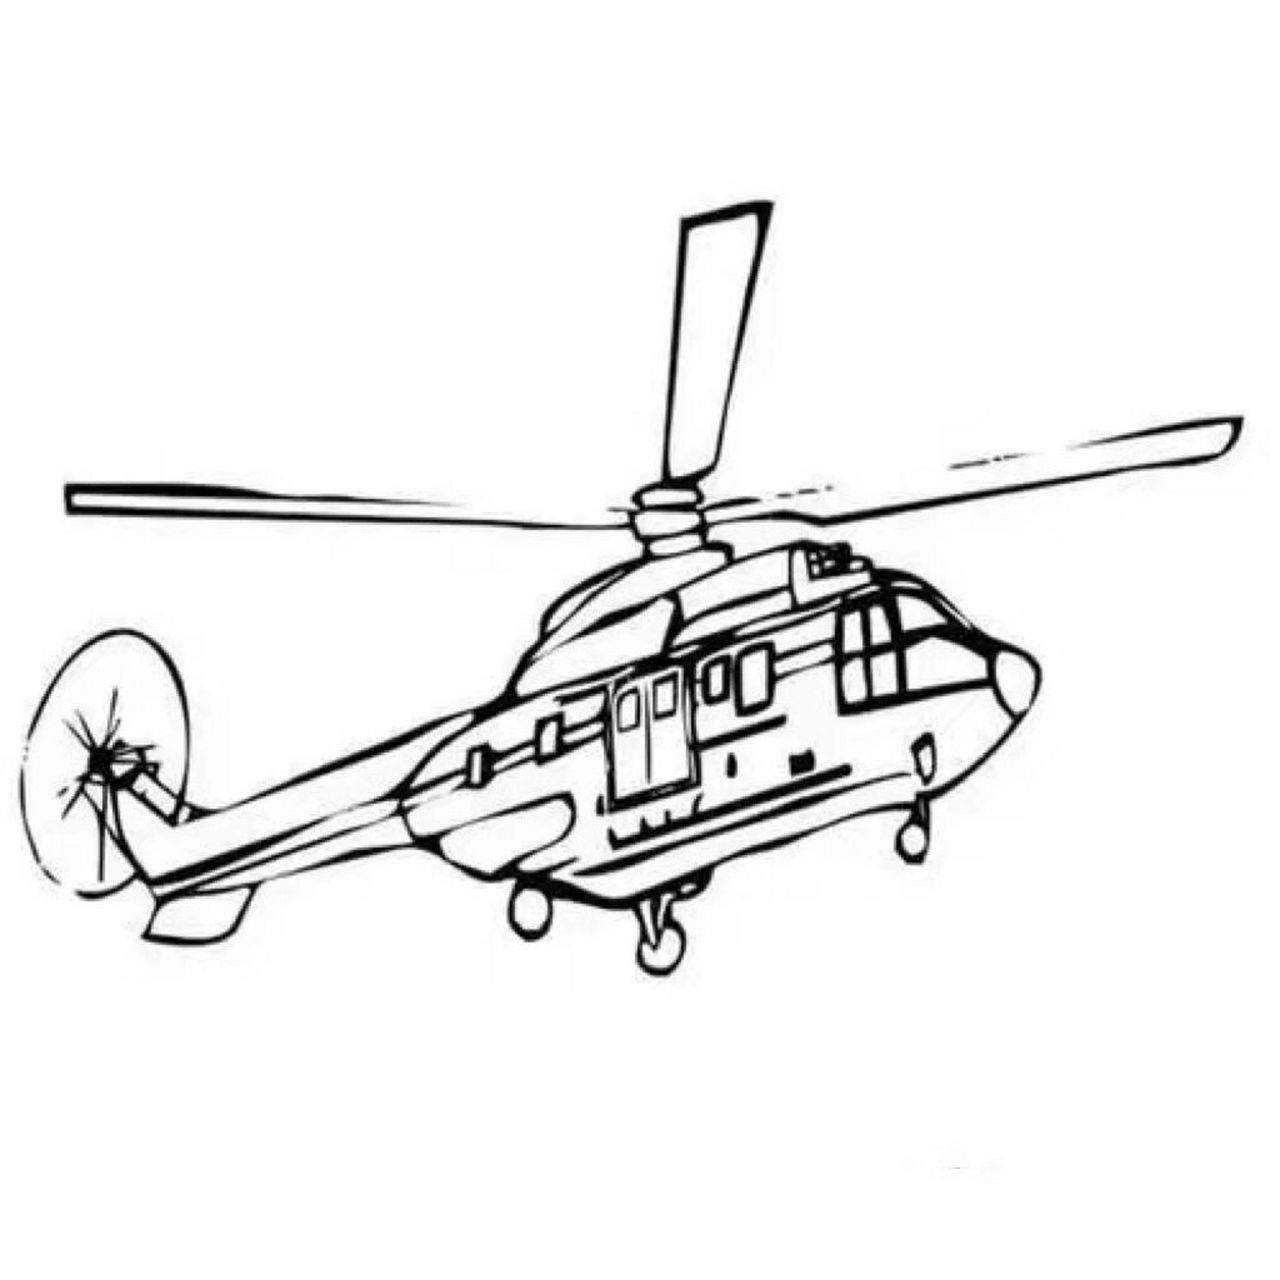 直升机简笔画图片大全图片